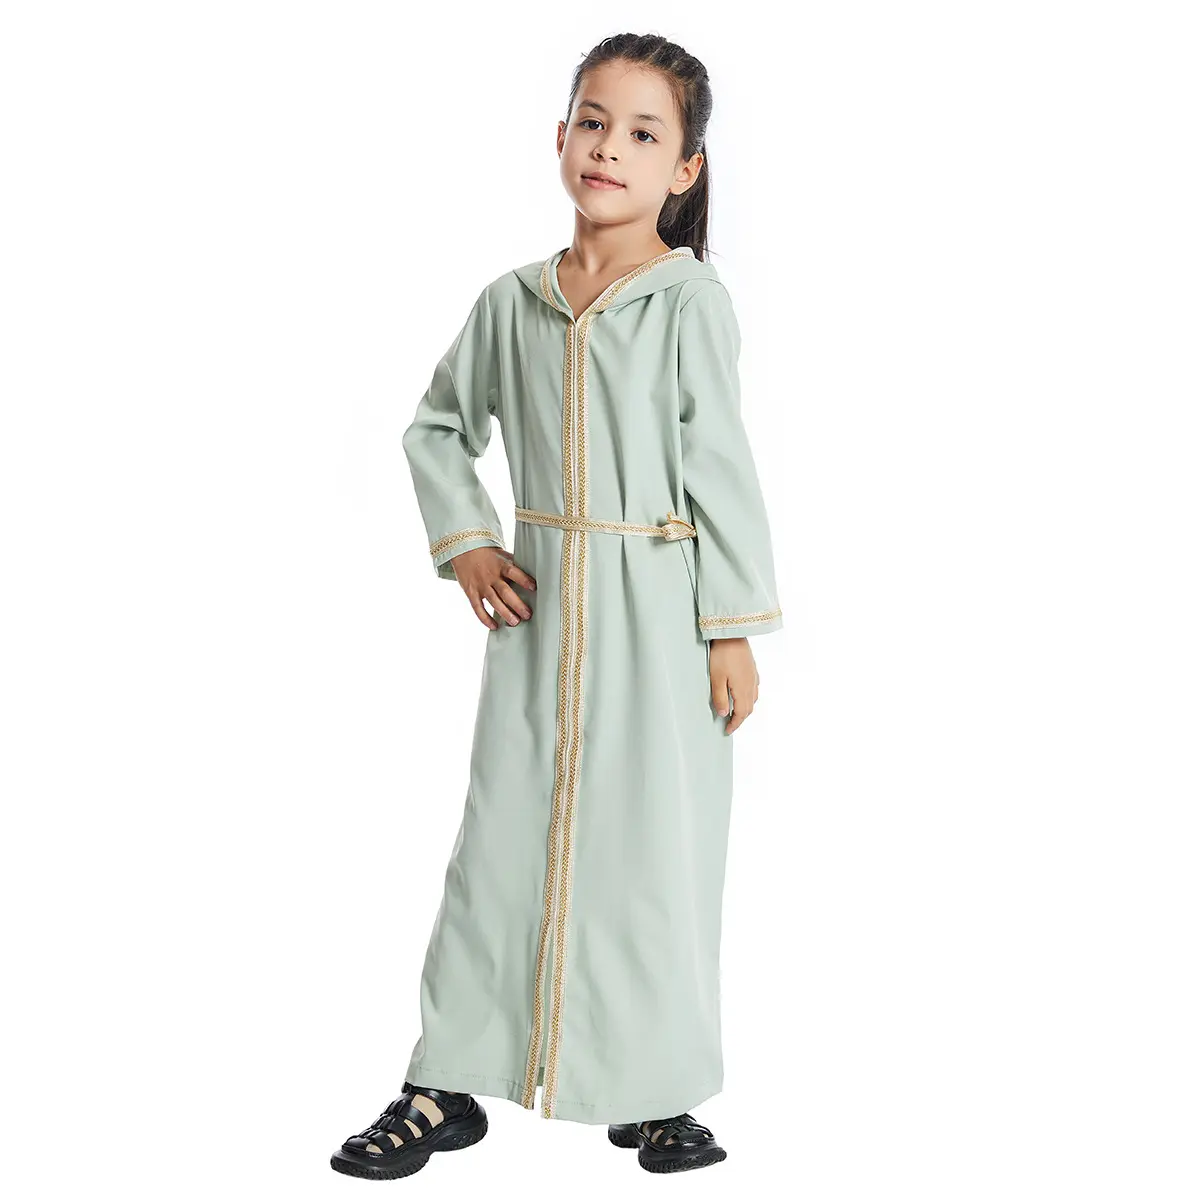 Vestido con capucha del Sudeste Asiático para niños musulmanes